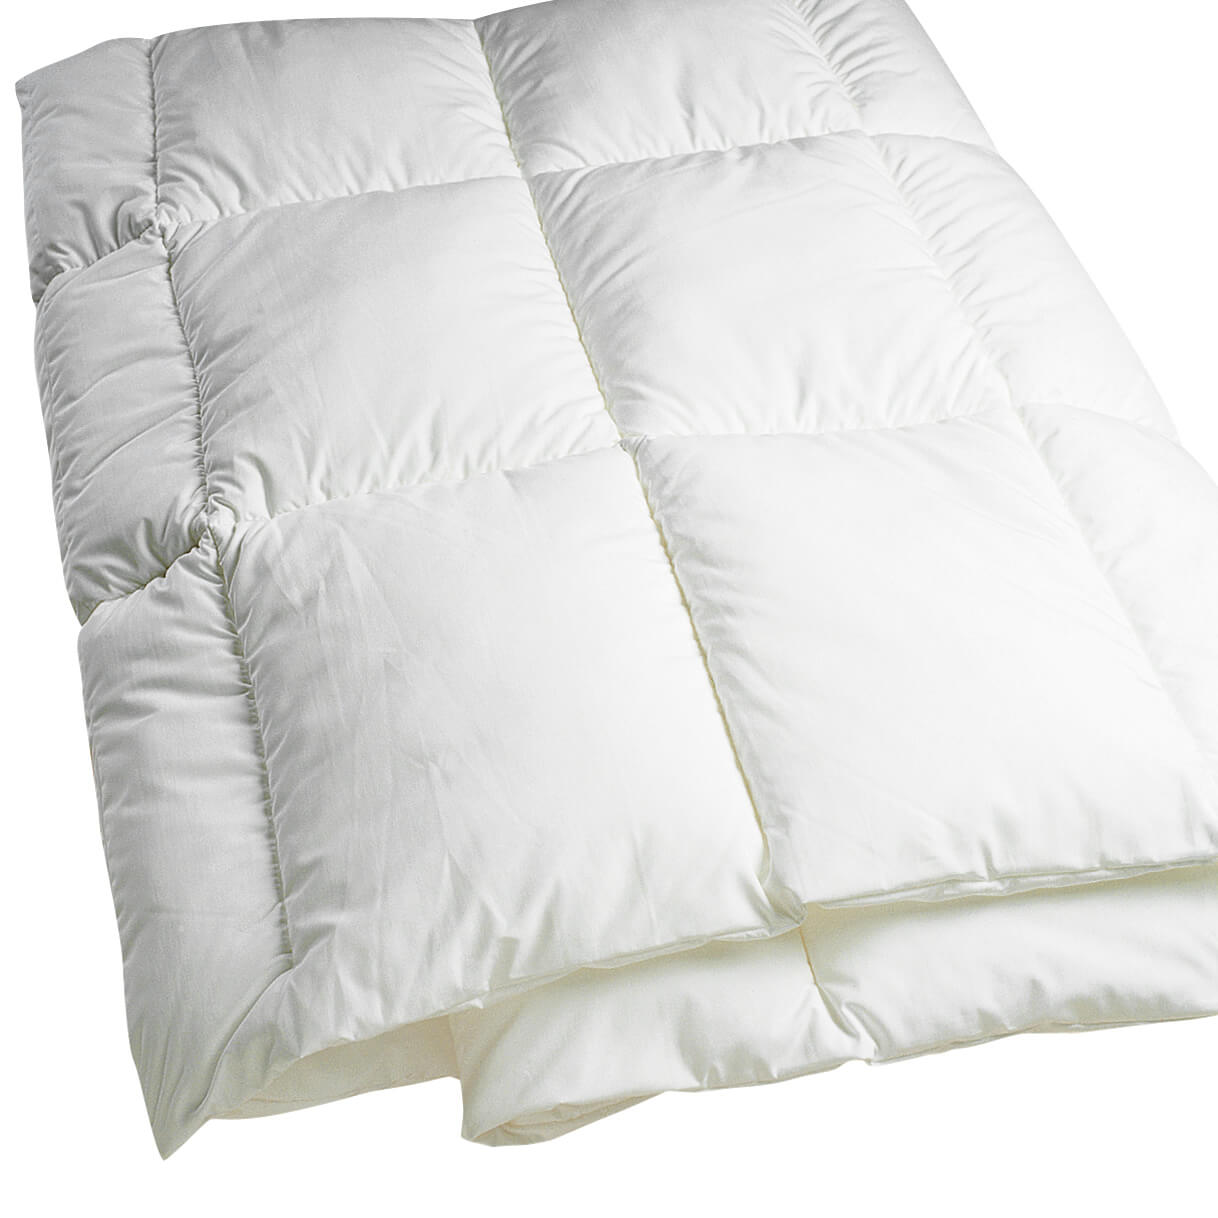 DreamFill® Microfiber Allergen-Proof Comforters